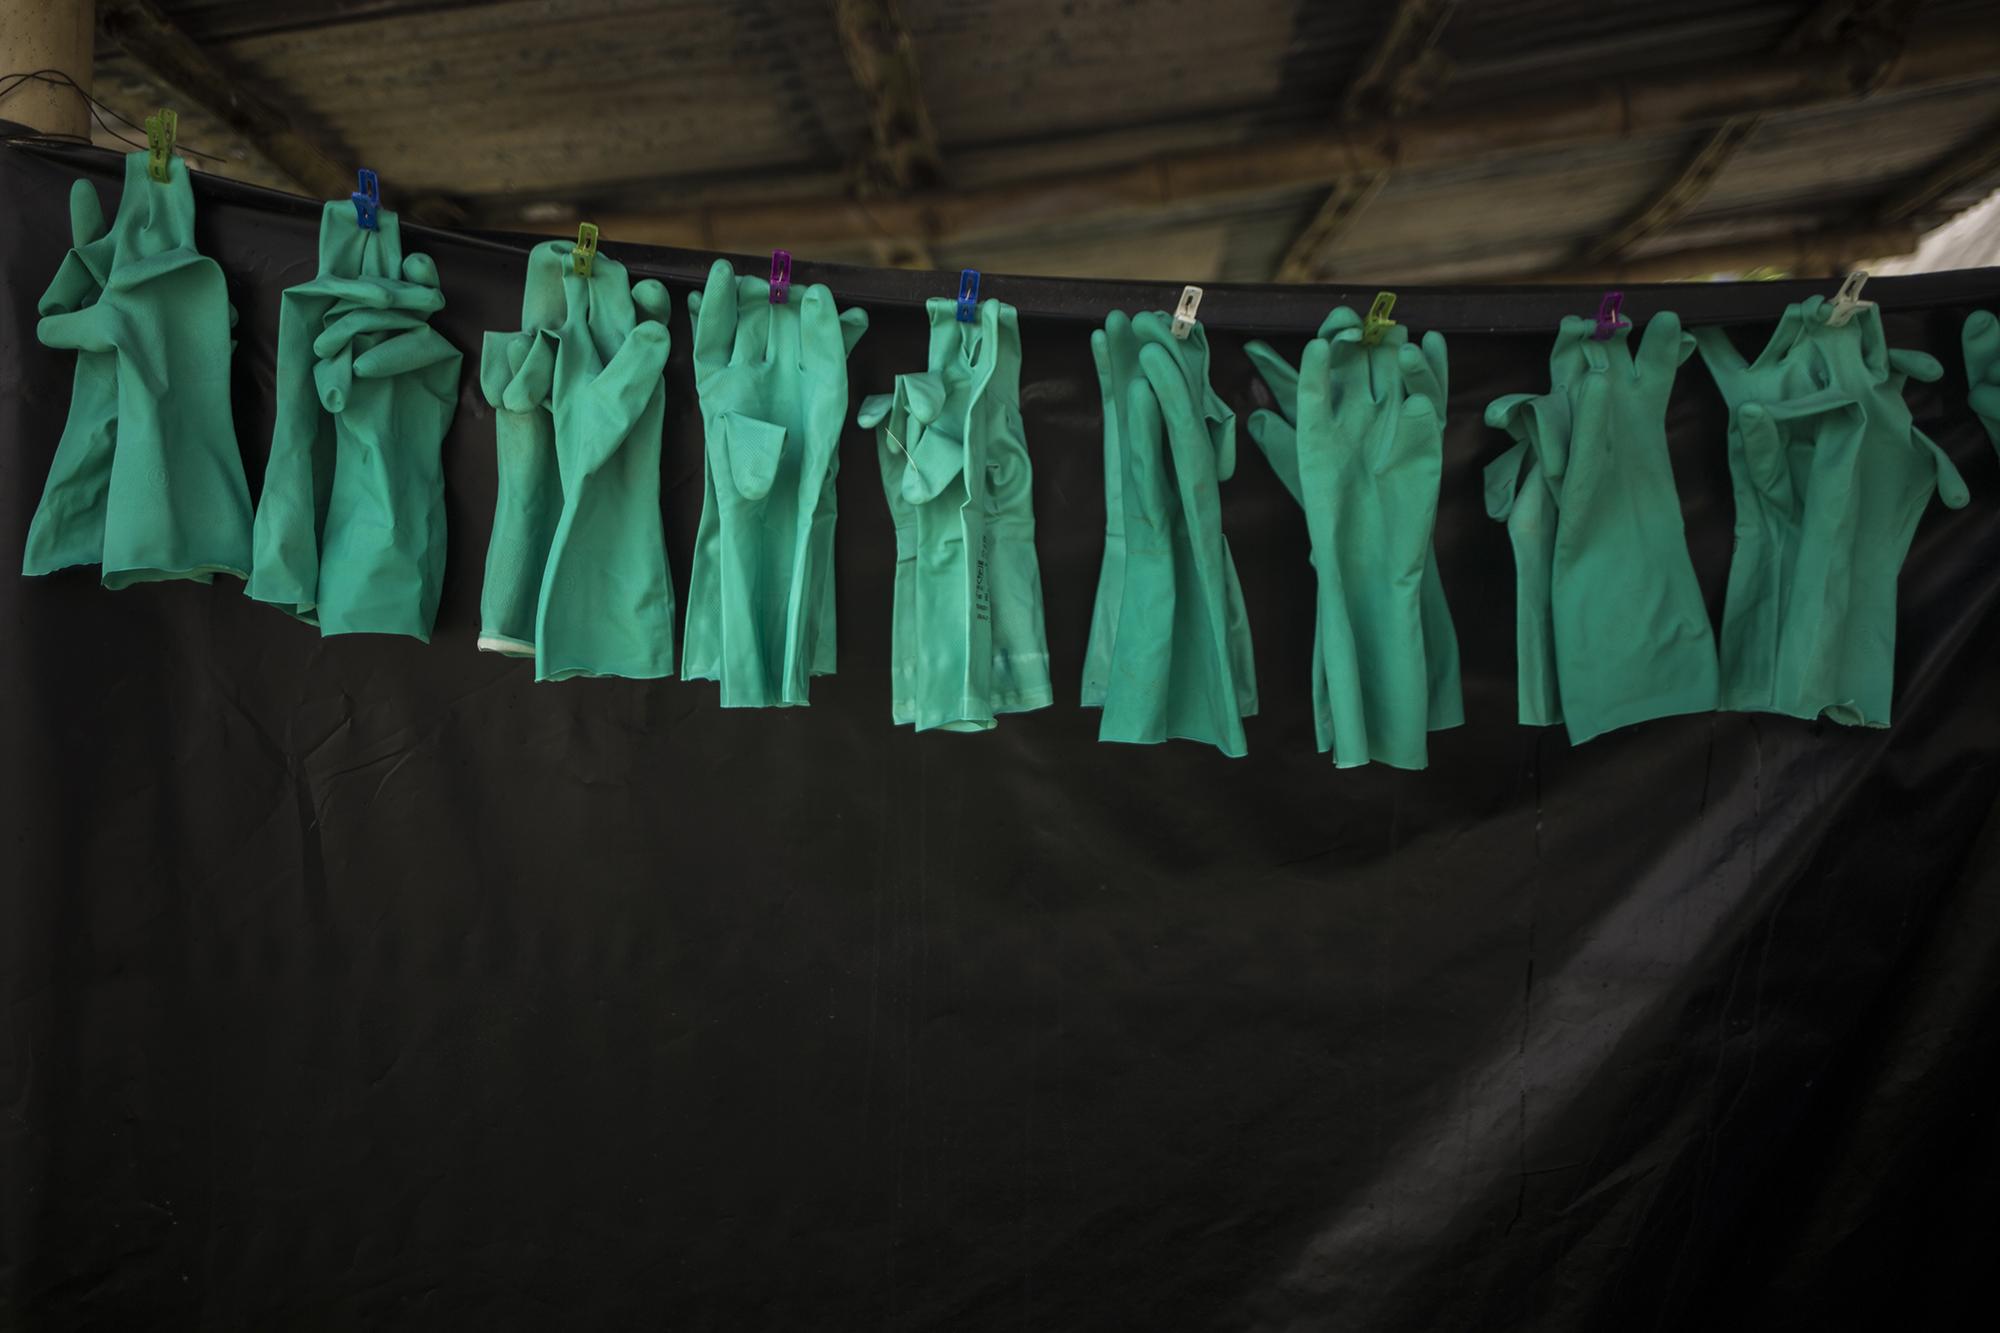 Para usar estos guantes de nitrilo (hule), los enterradores deben ponerse antes dos guantes de látex. Estos son siempre reutilizables después de reposar en detergente y lejía, tras finalizar cada jornada.